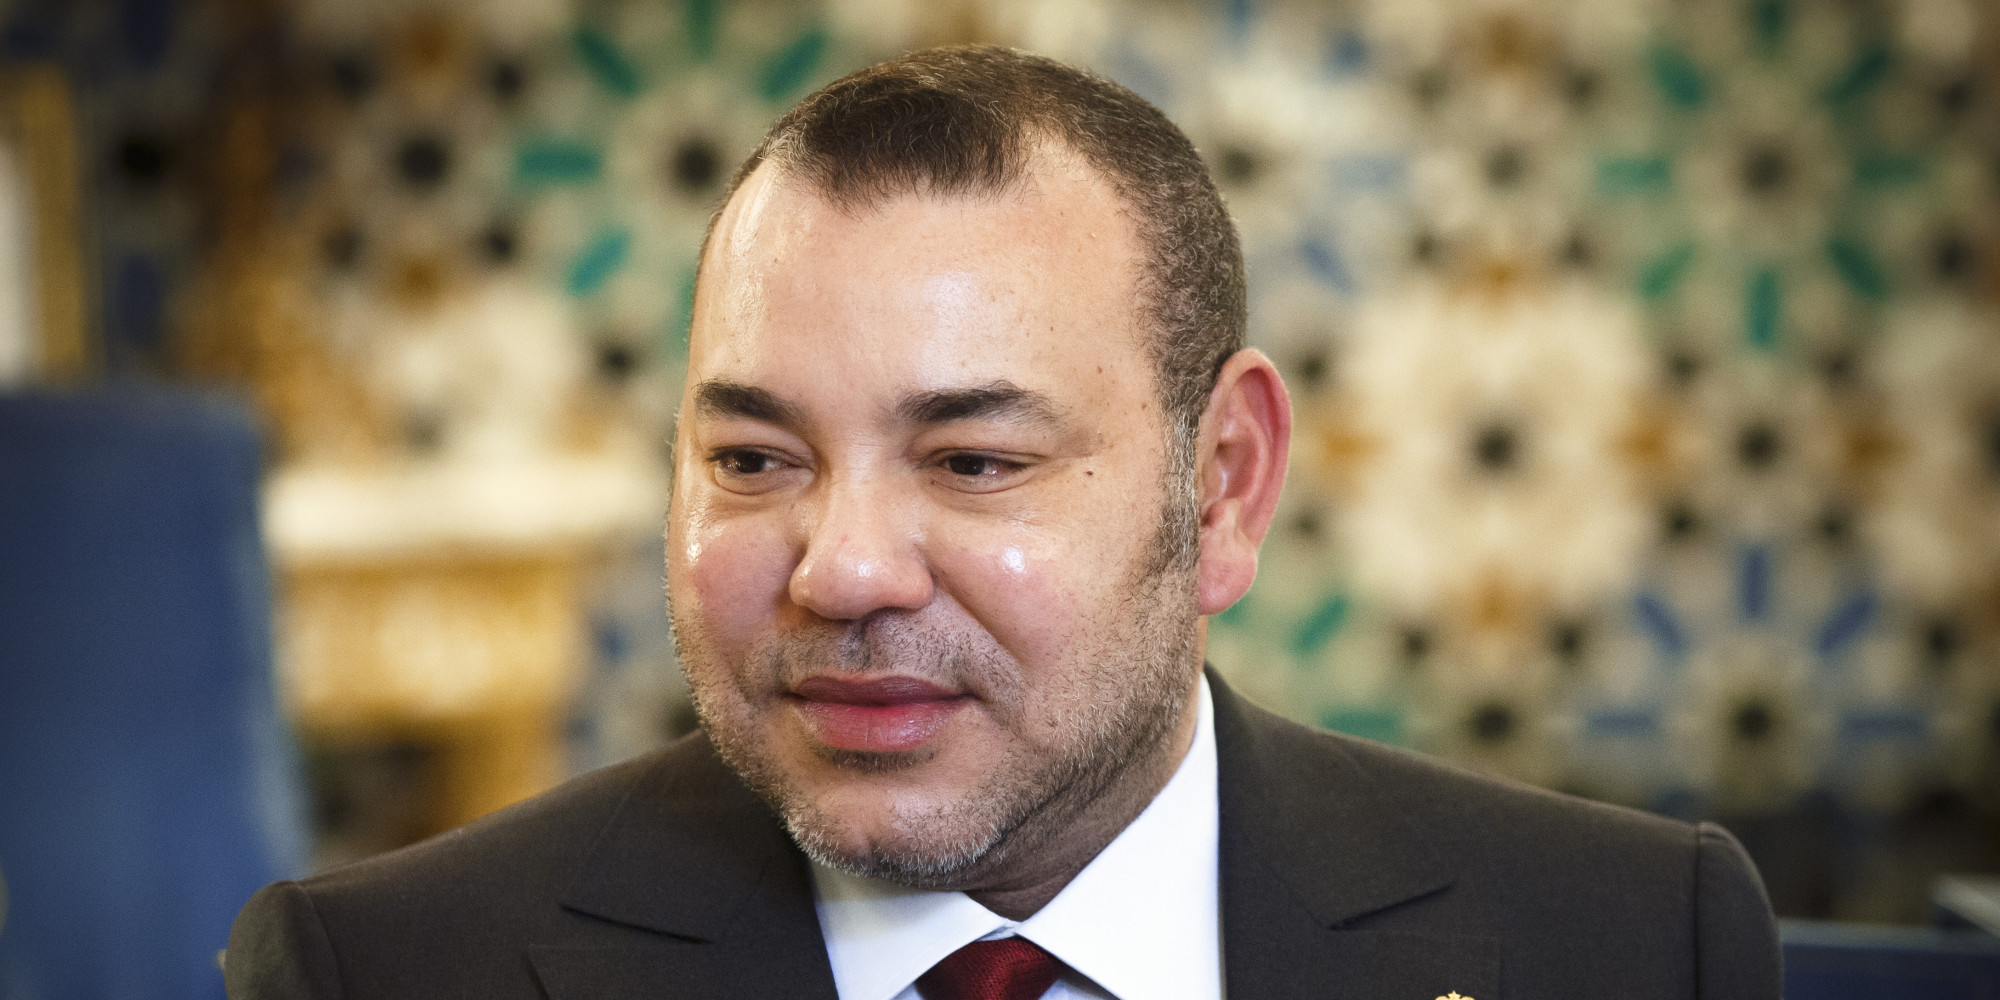 Mohammed VI Net Worth